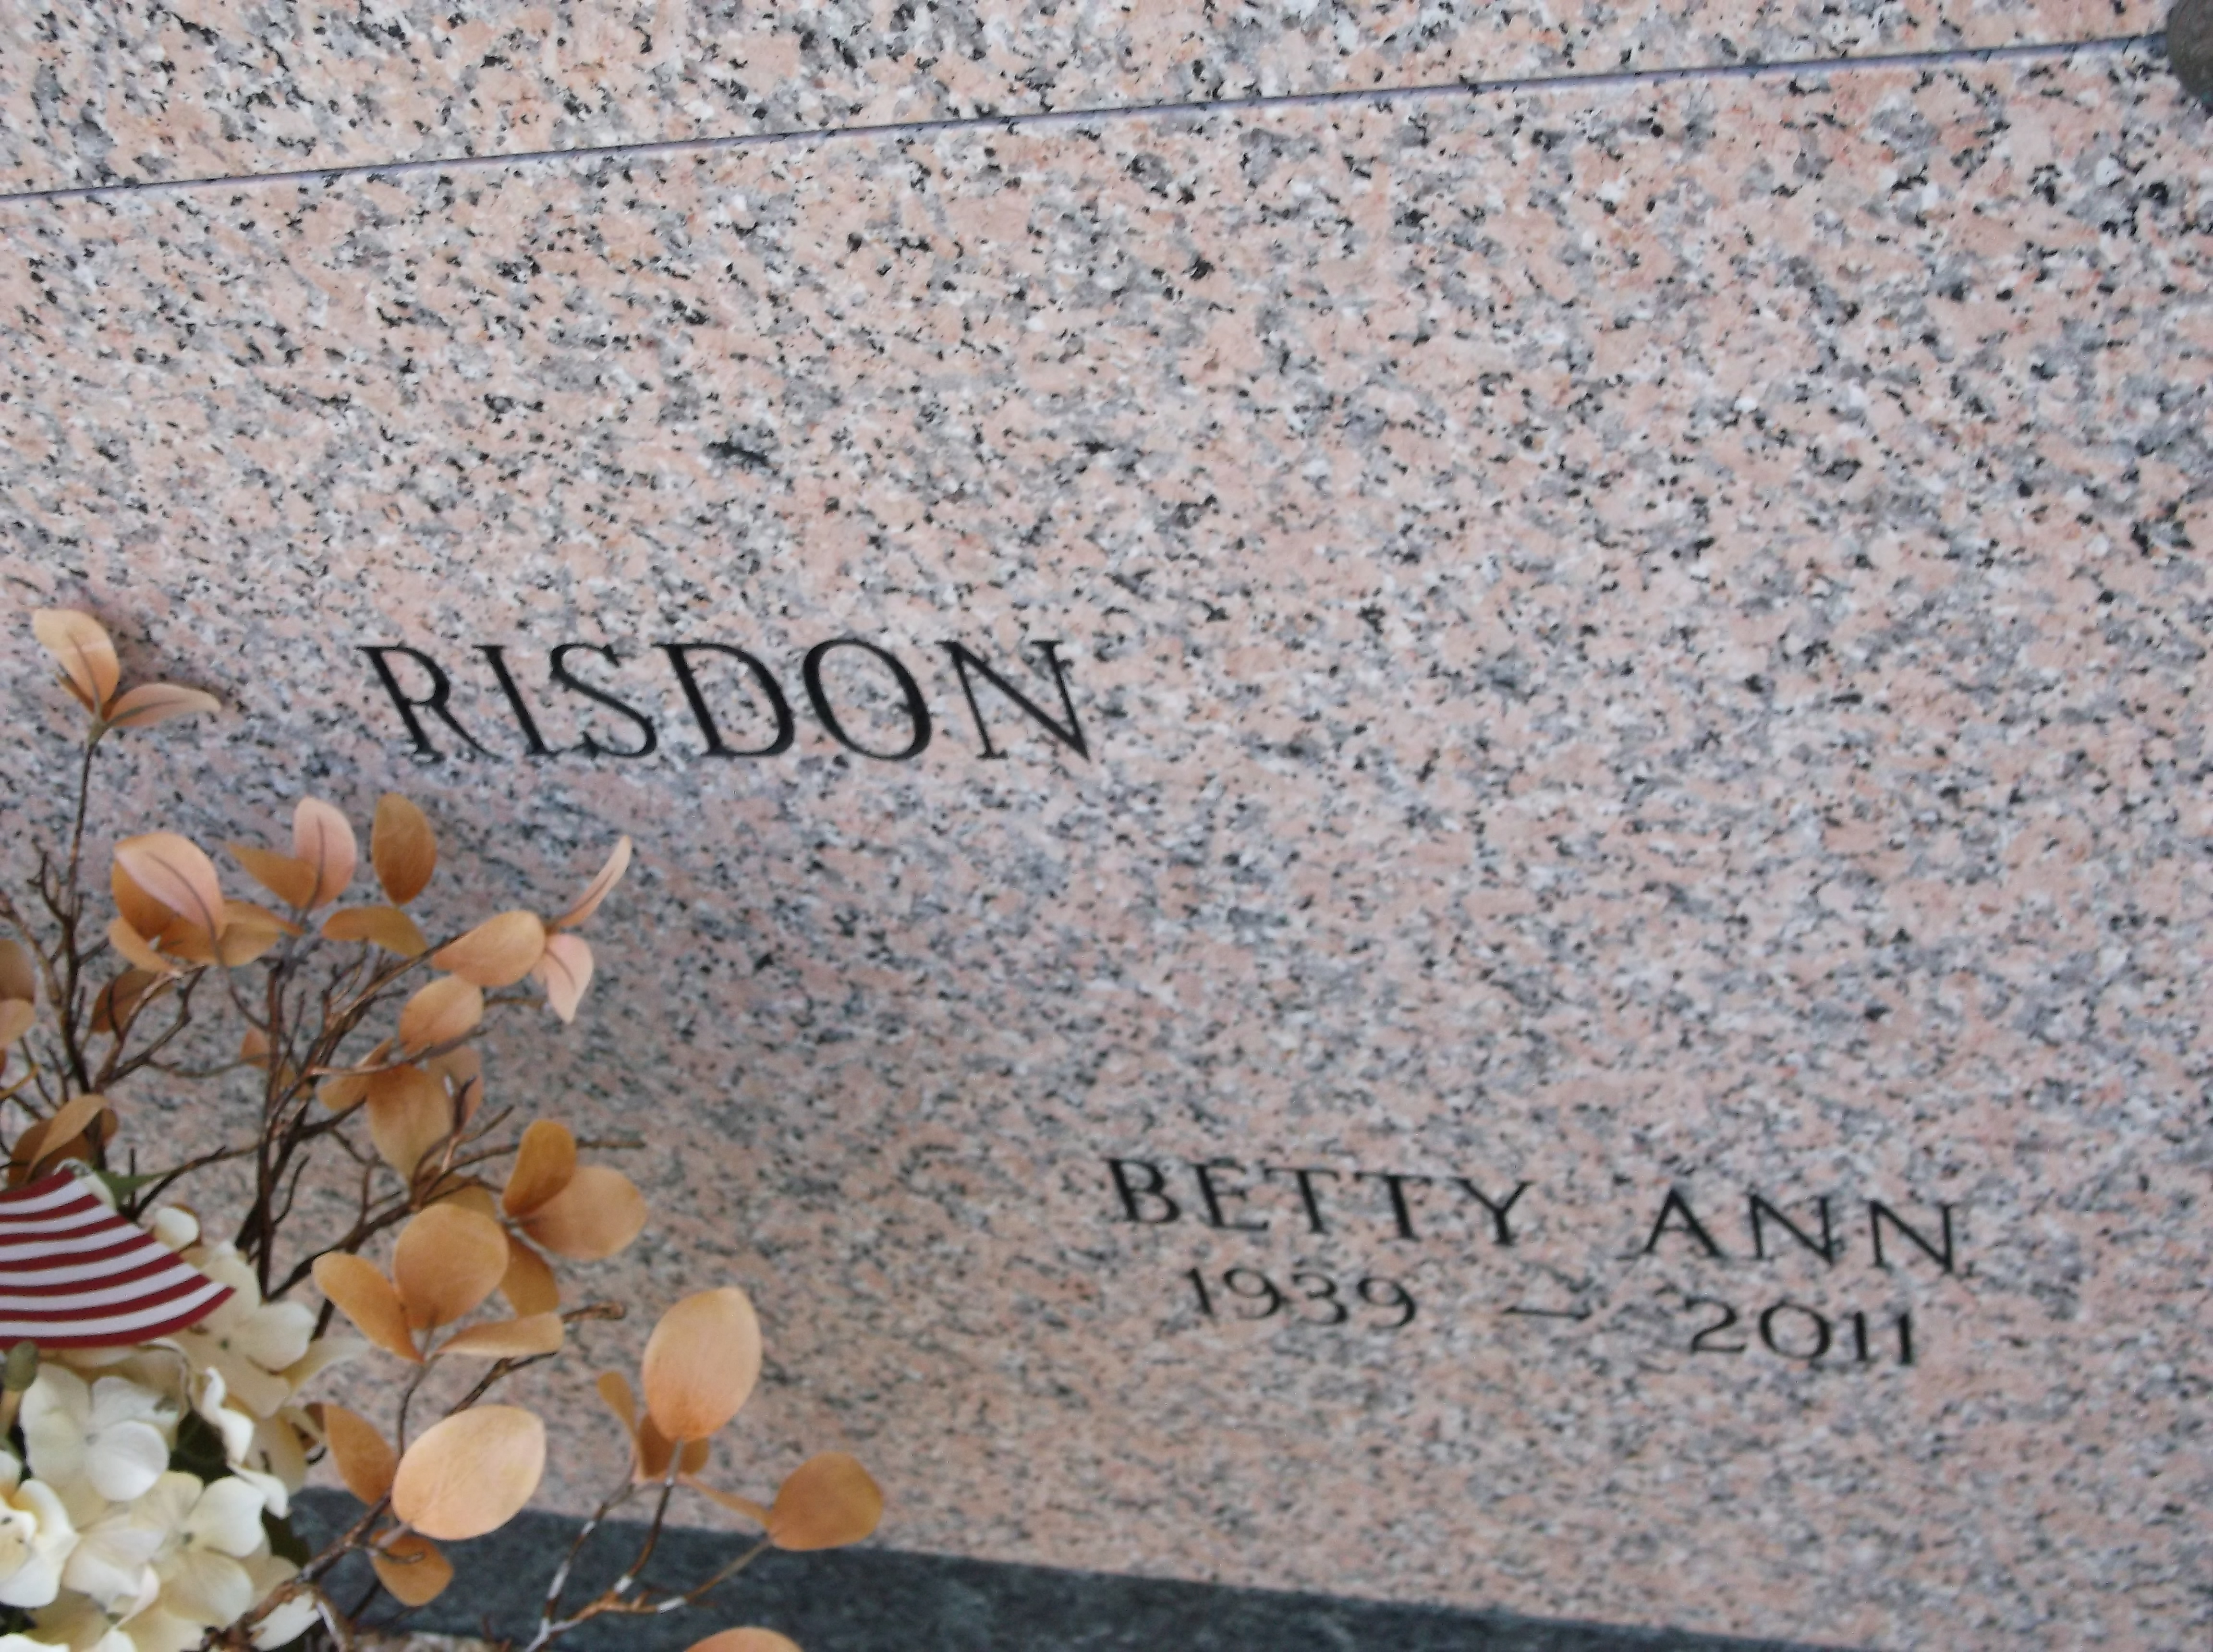 Betty Ann Risdon